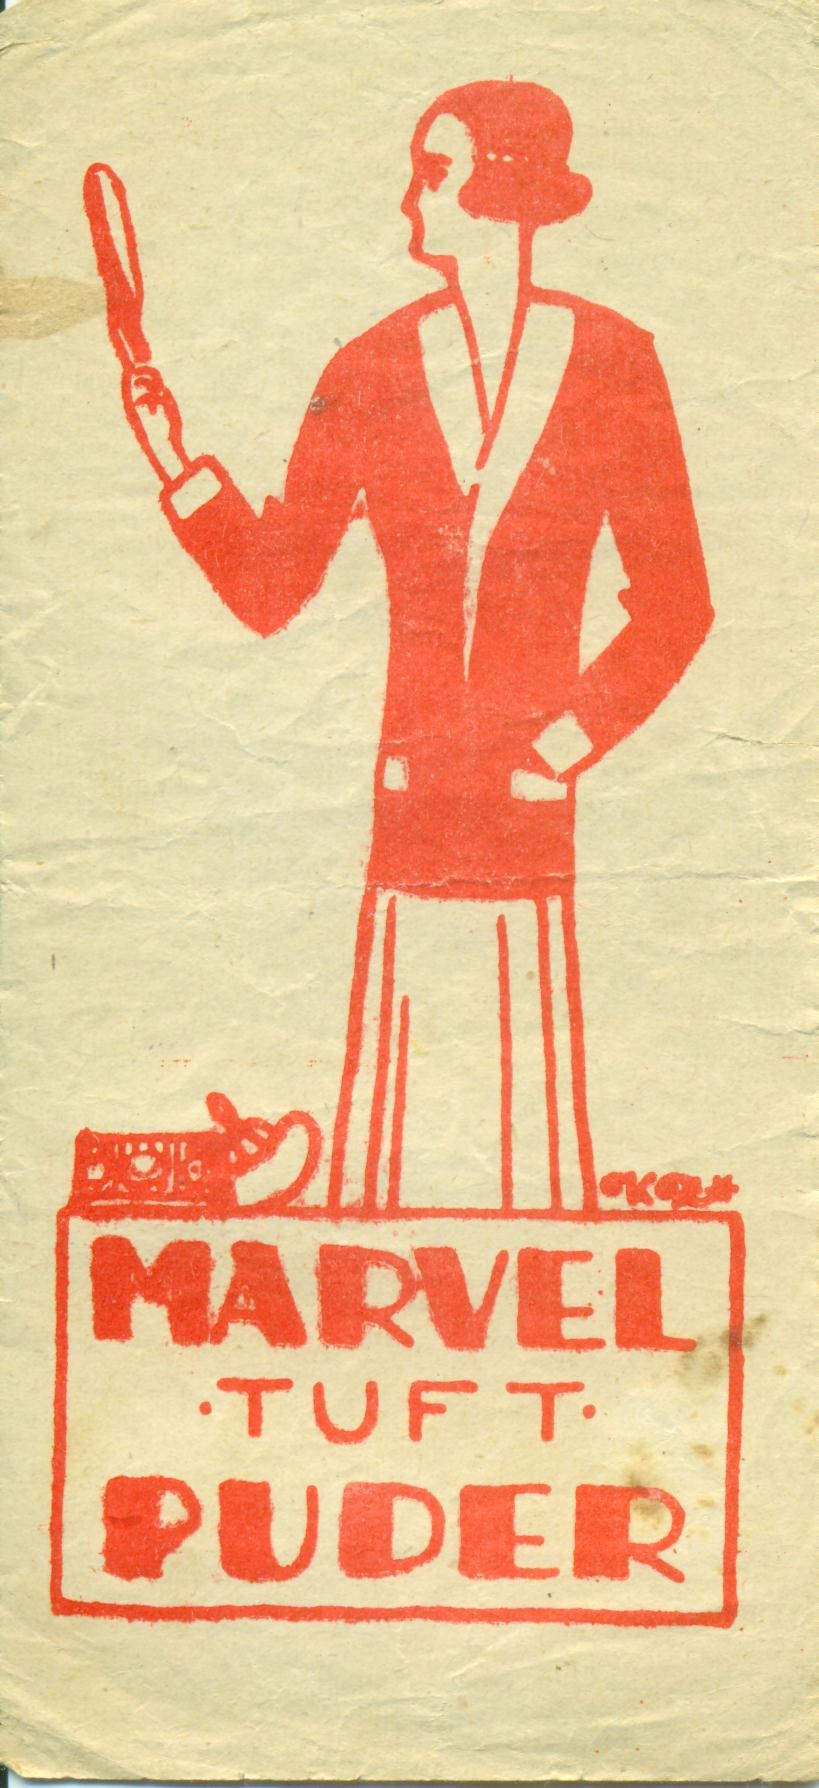 Marvel tuft púder (Magyar Kereskedelmi és Vendéglátóipari Múzeum CC BY-NC-SA)